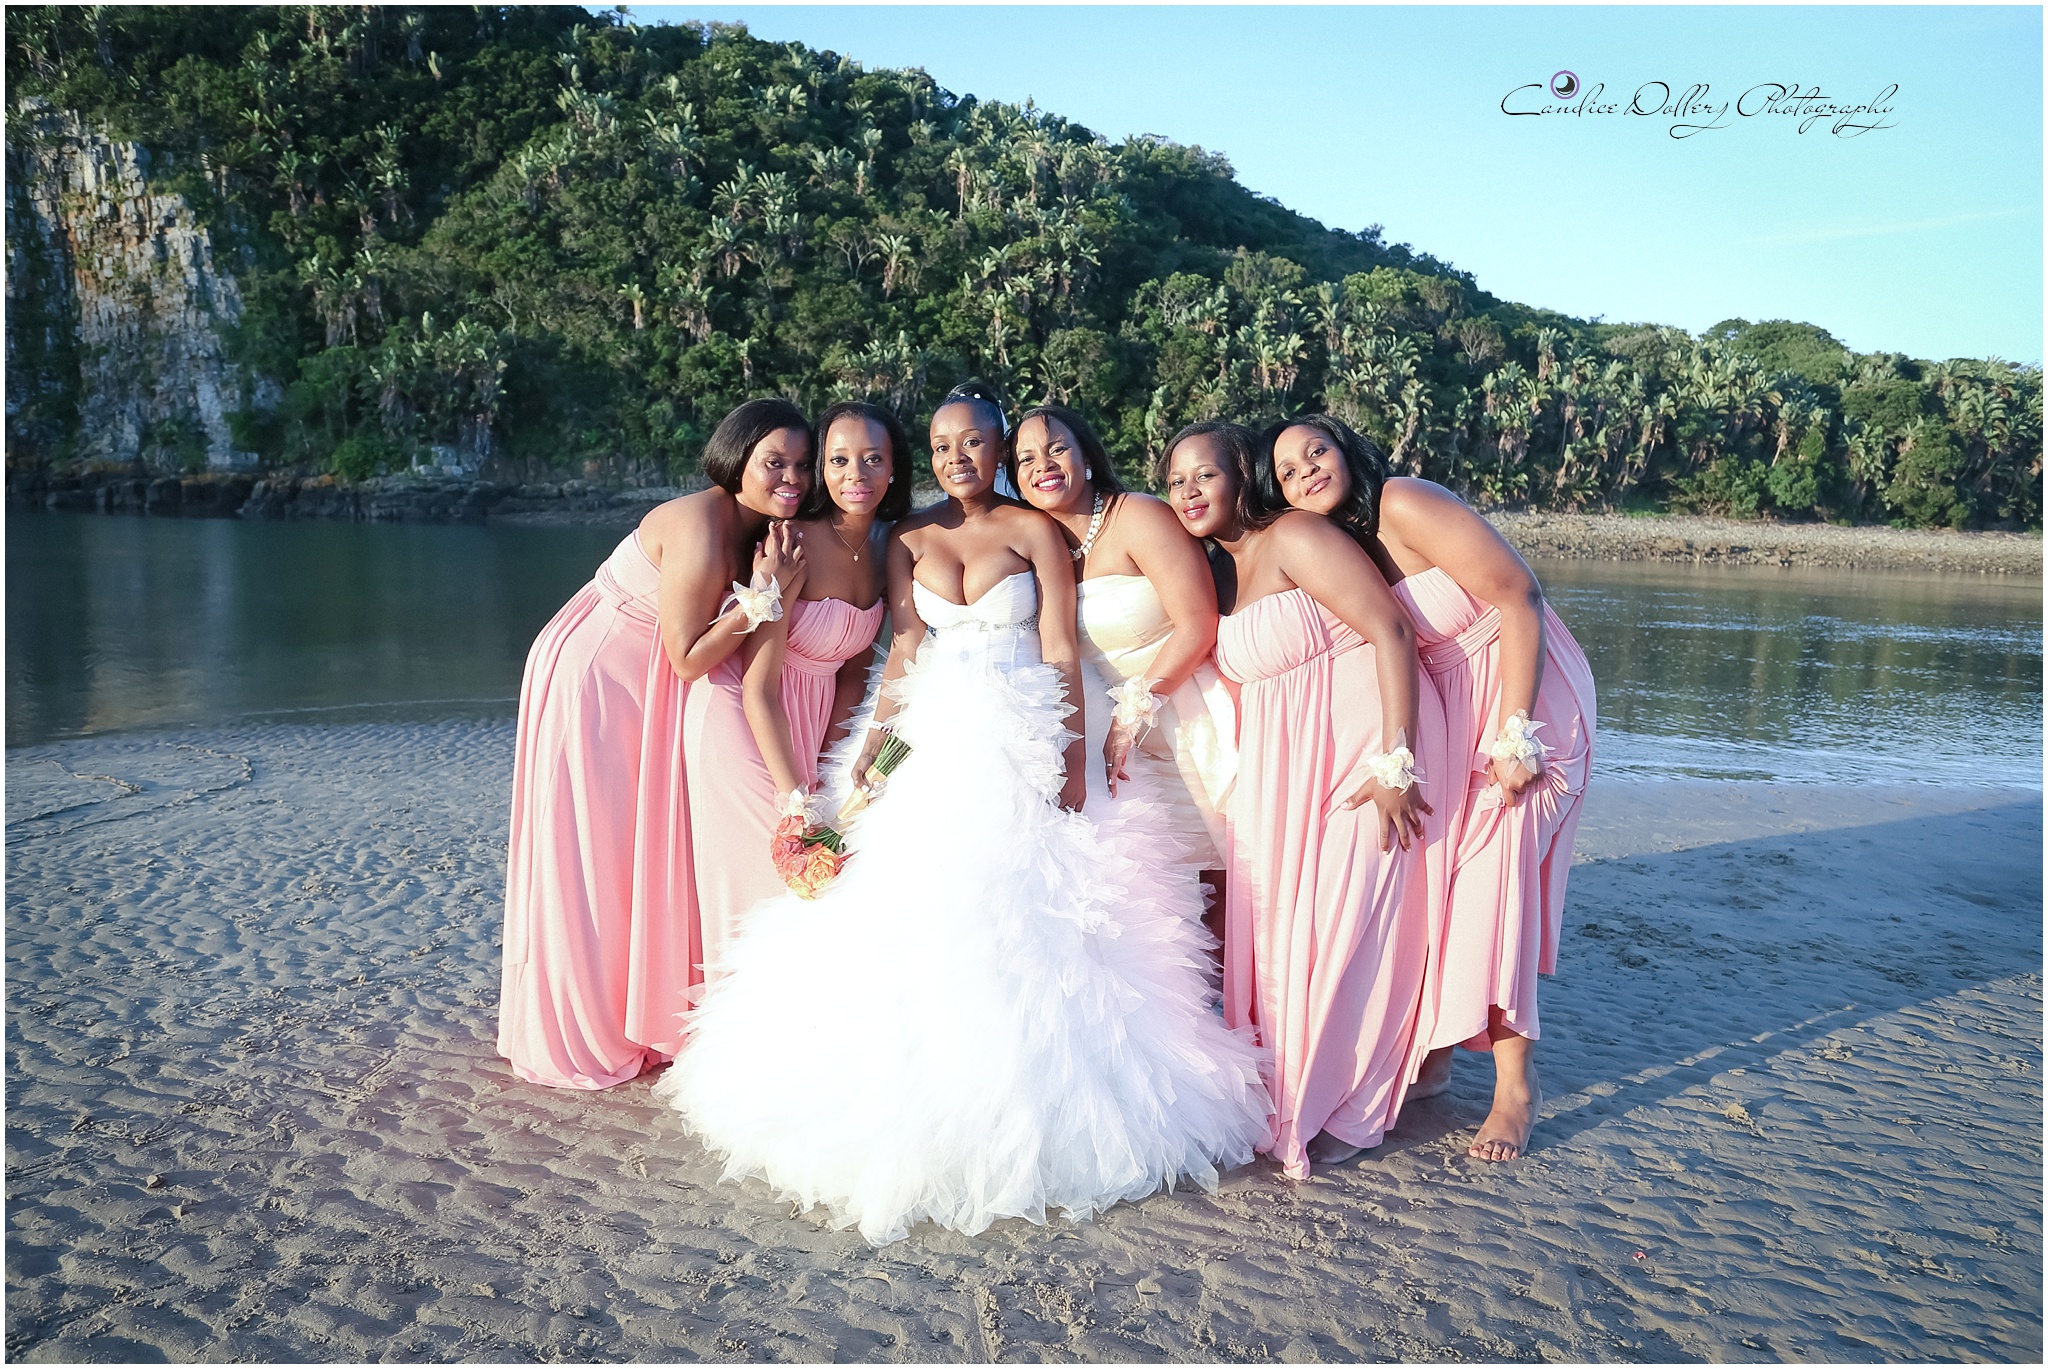 Beach Wedding photos-Candice Dollery Photograhy_3721